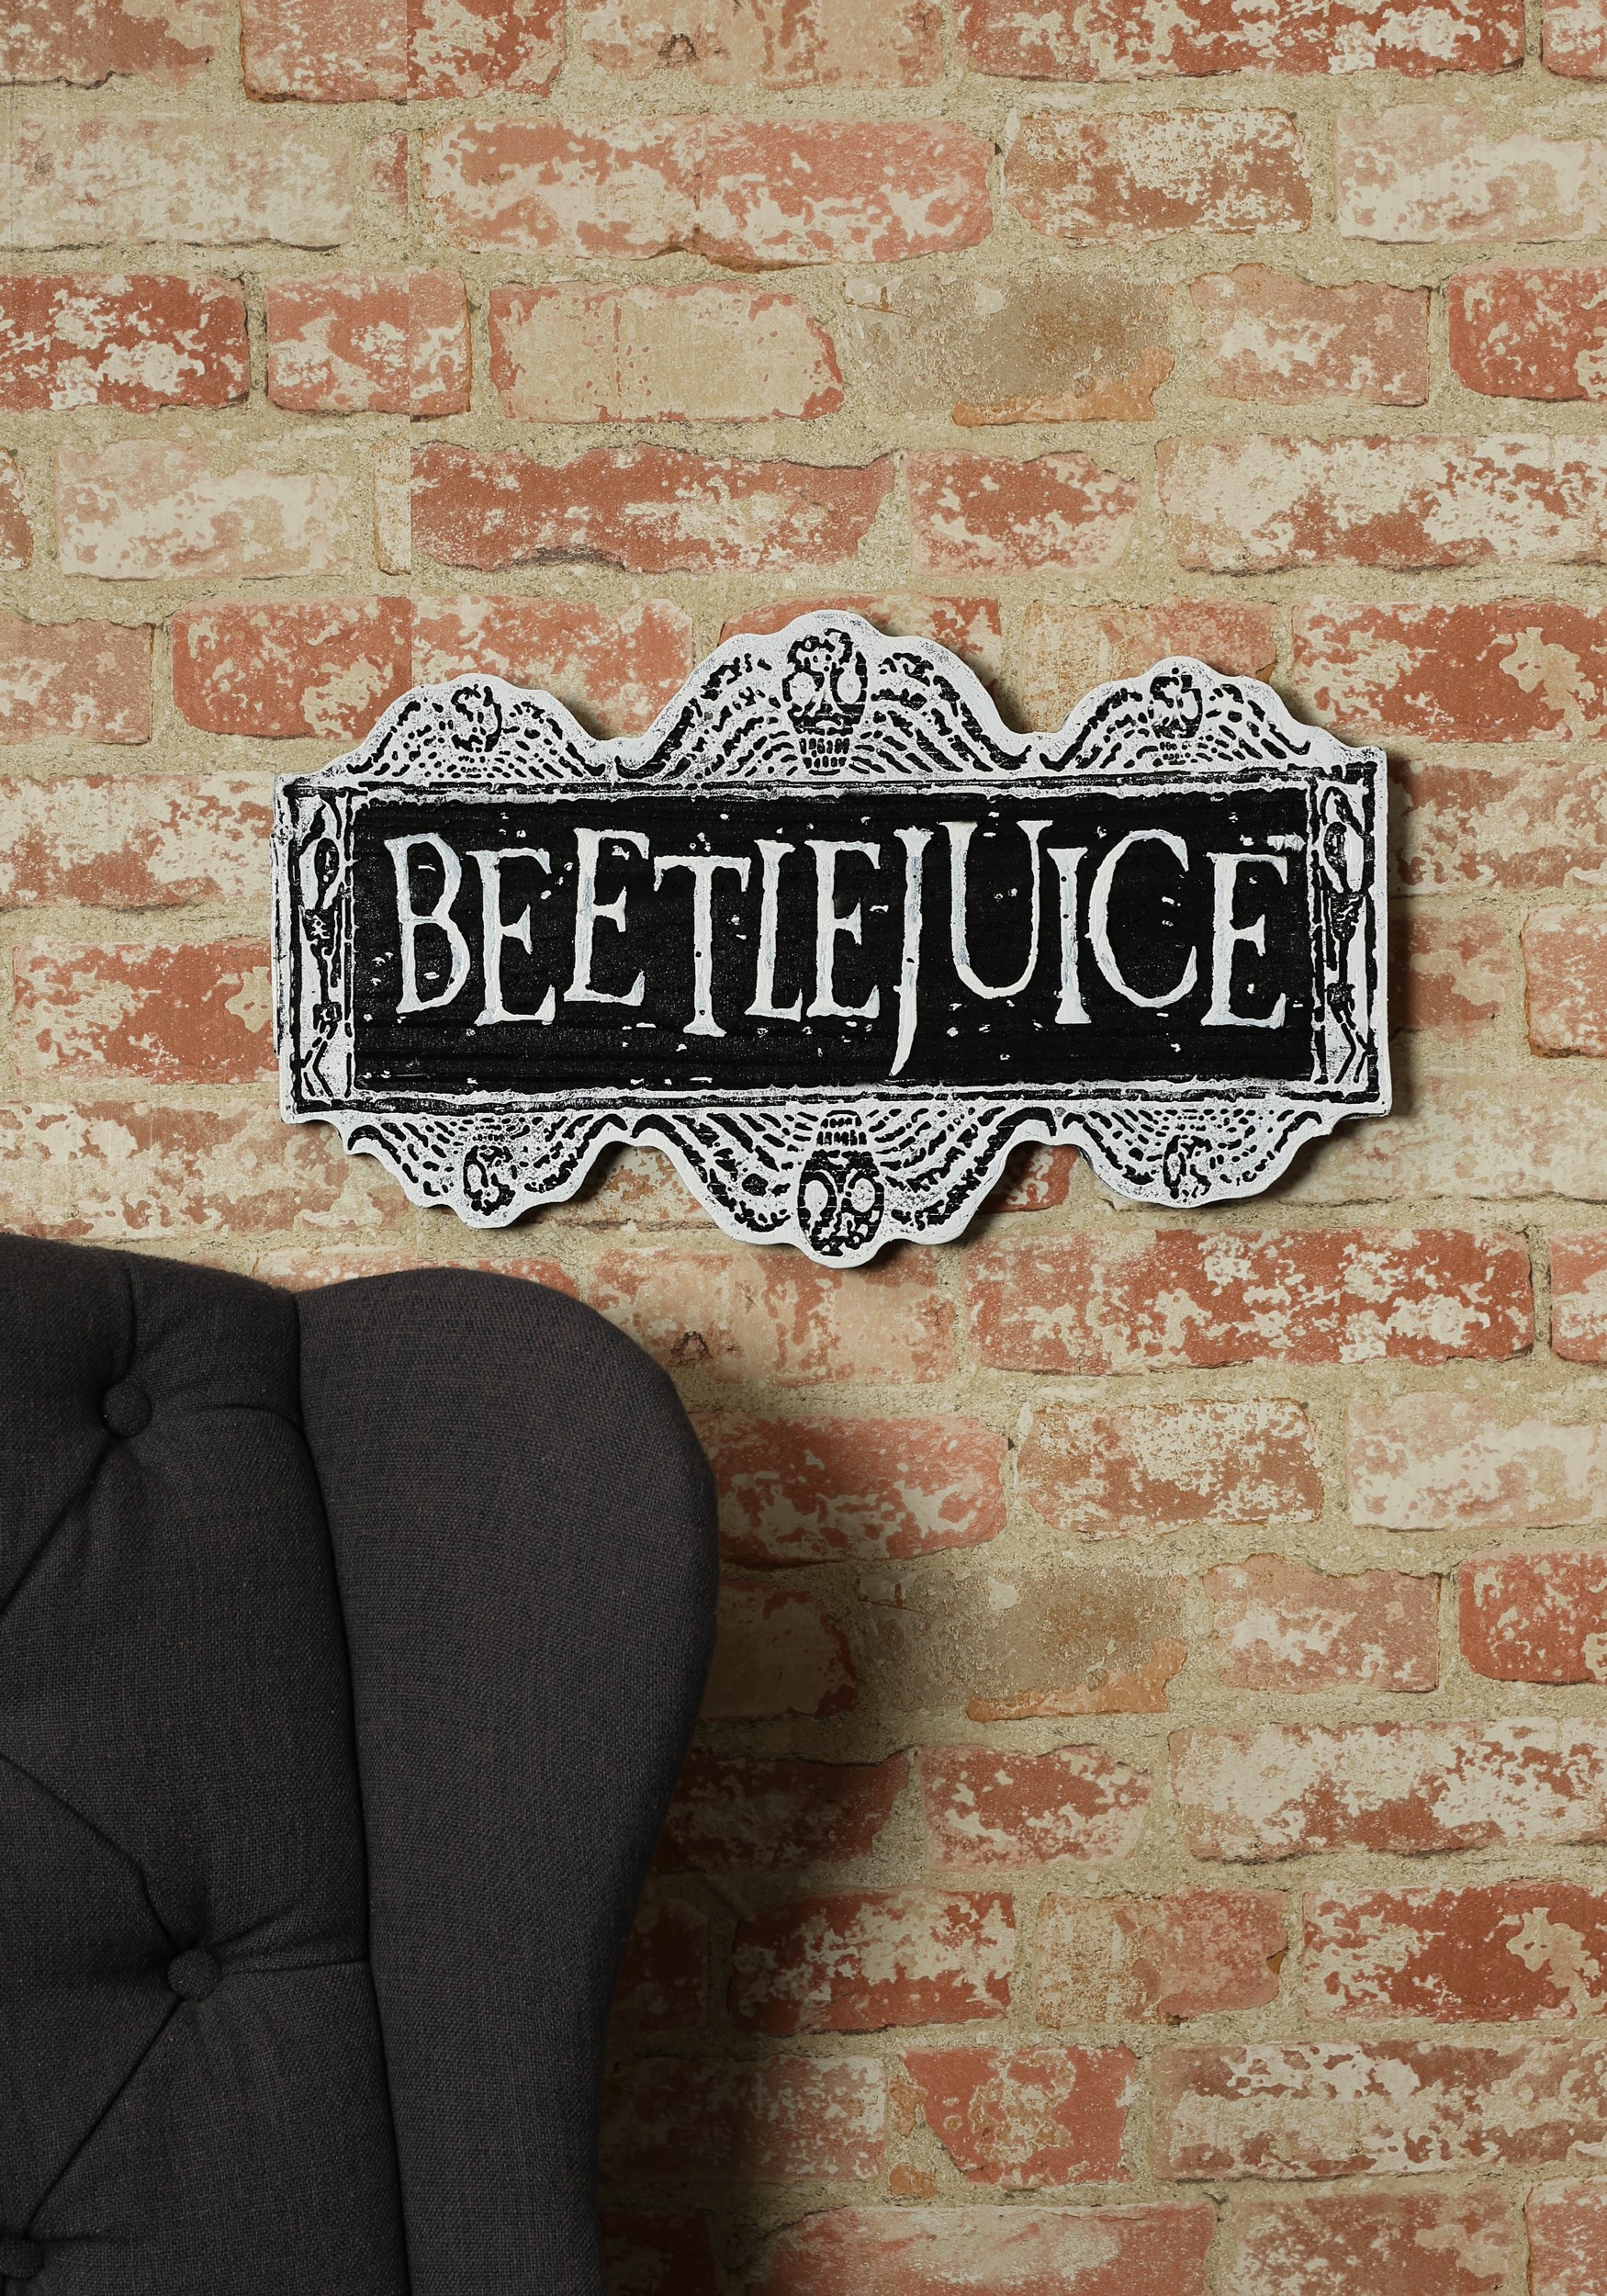 Beetlejuice Decorative Sign